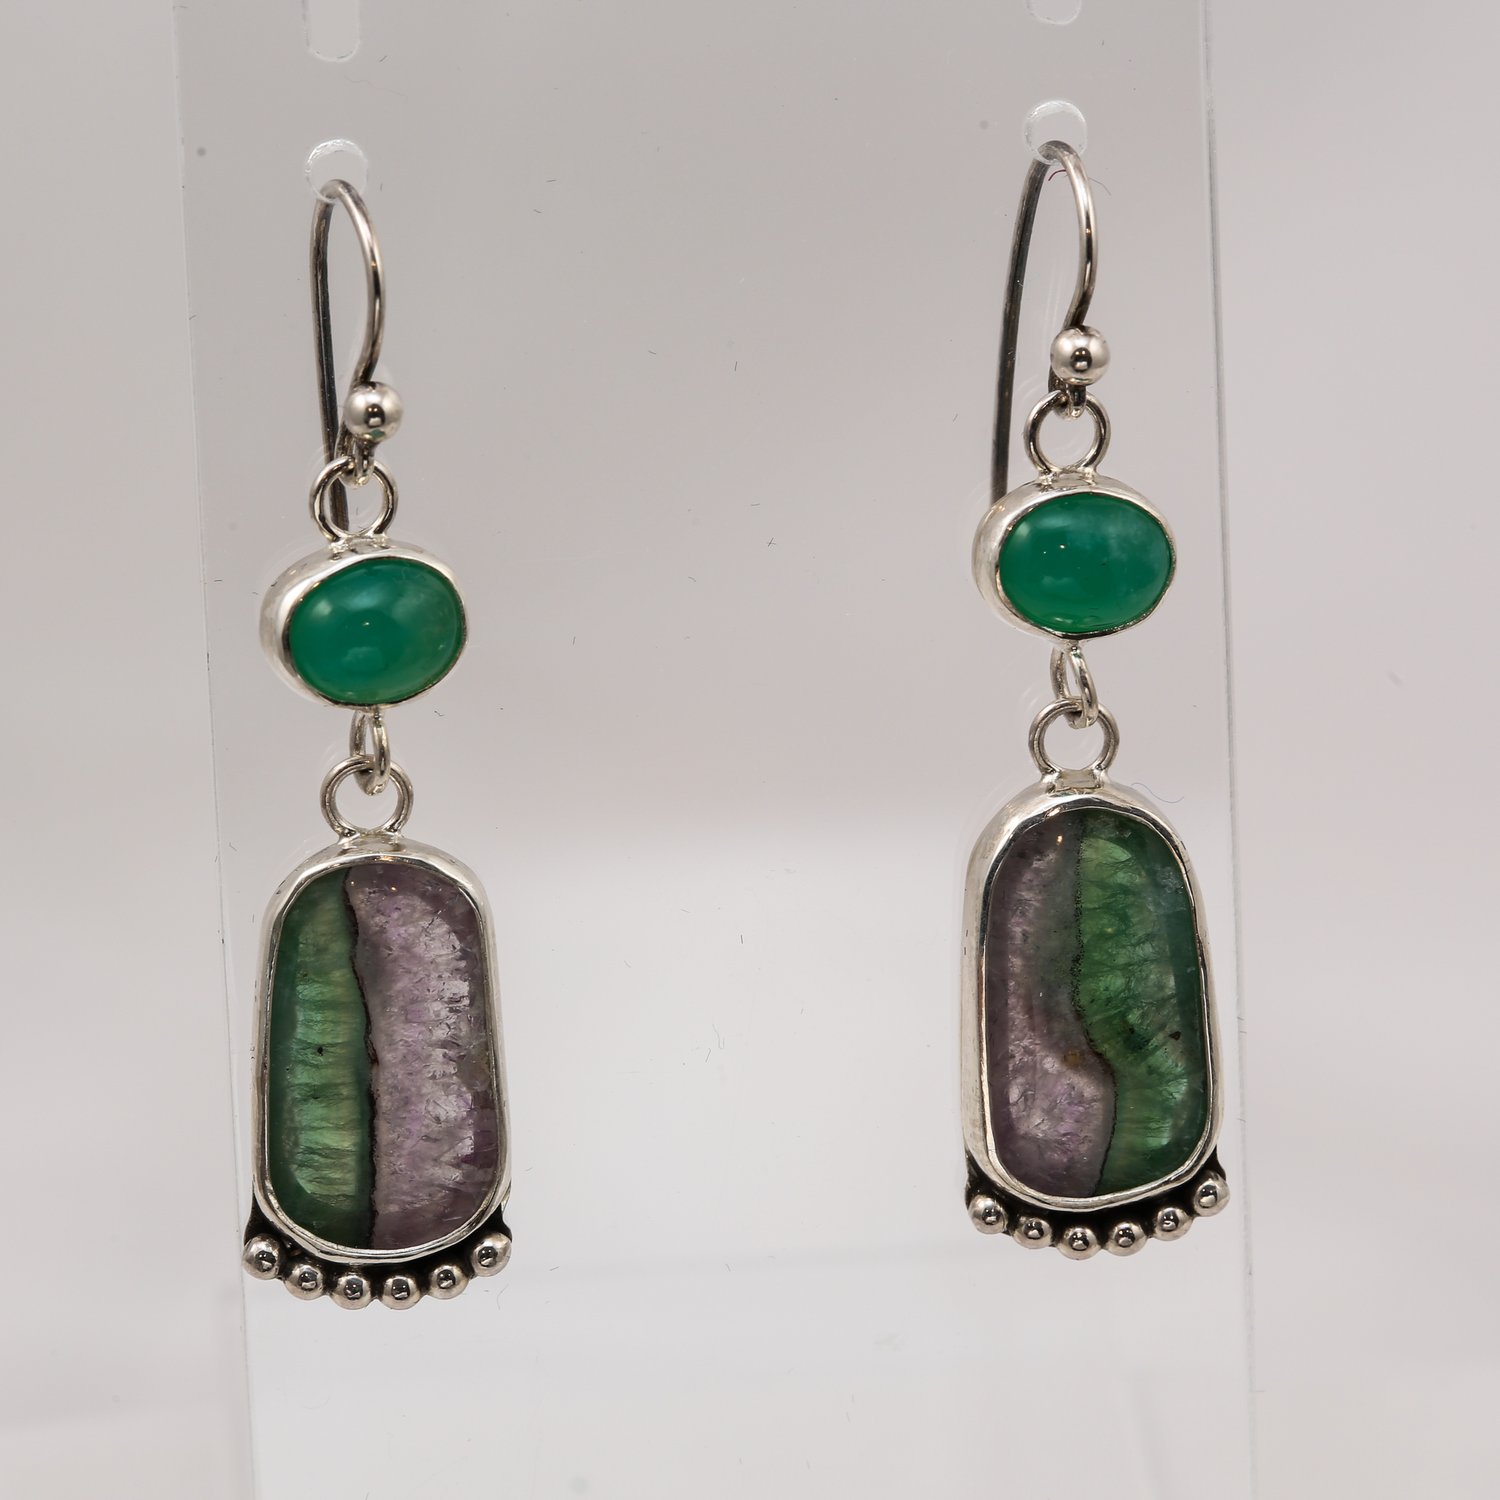 Fluorite & Amethyst earrings with Chrysoprase